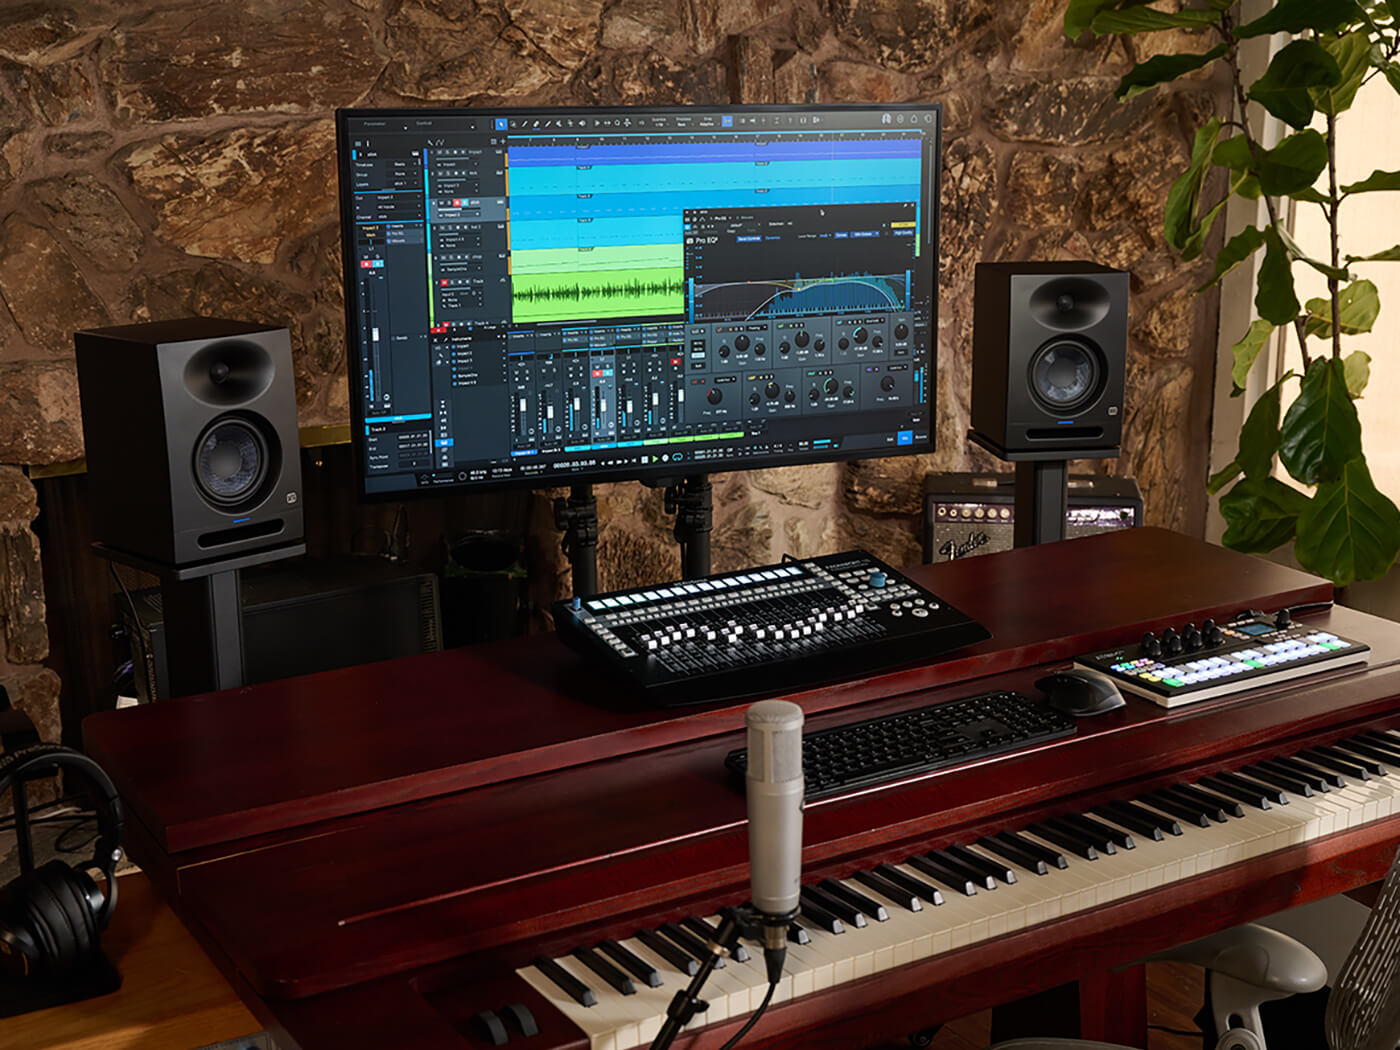 PreSonus Eris Studio 5 monitors on a desk in a home studio